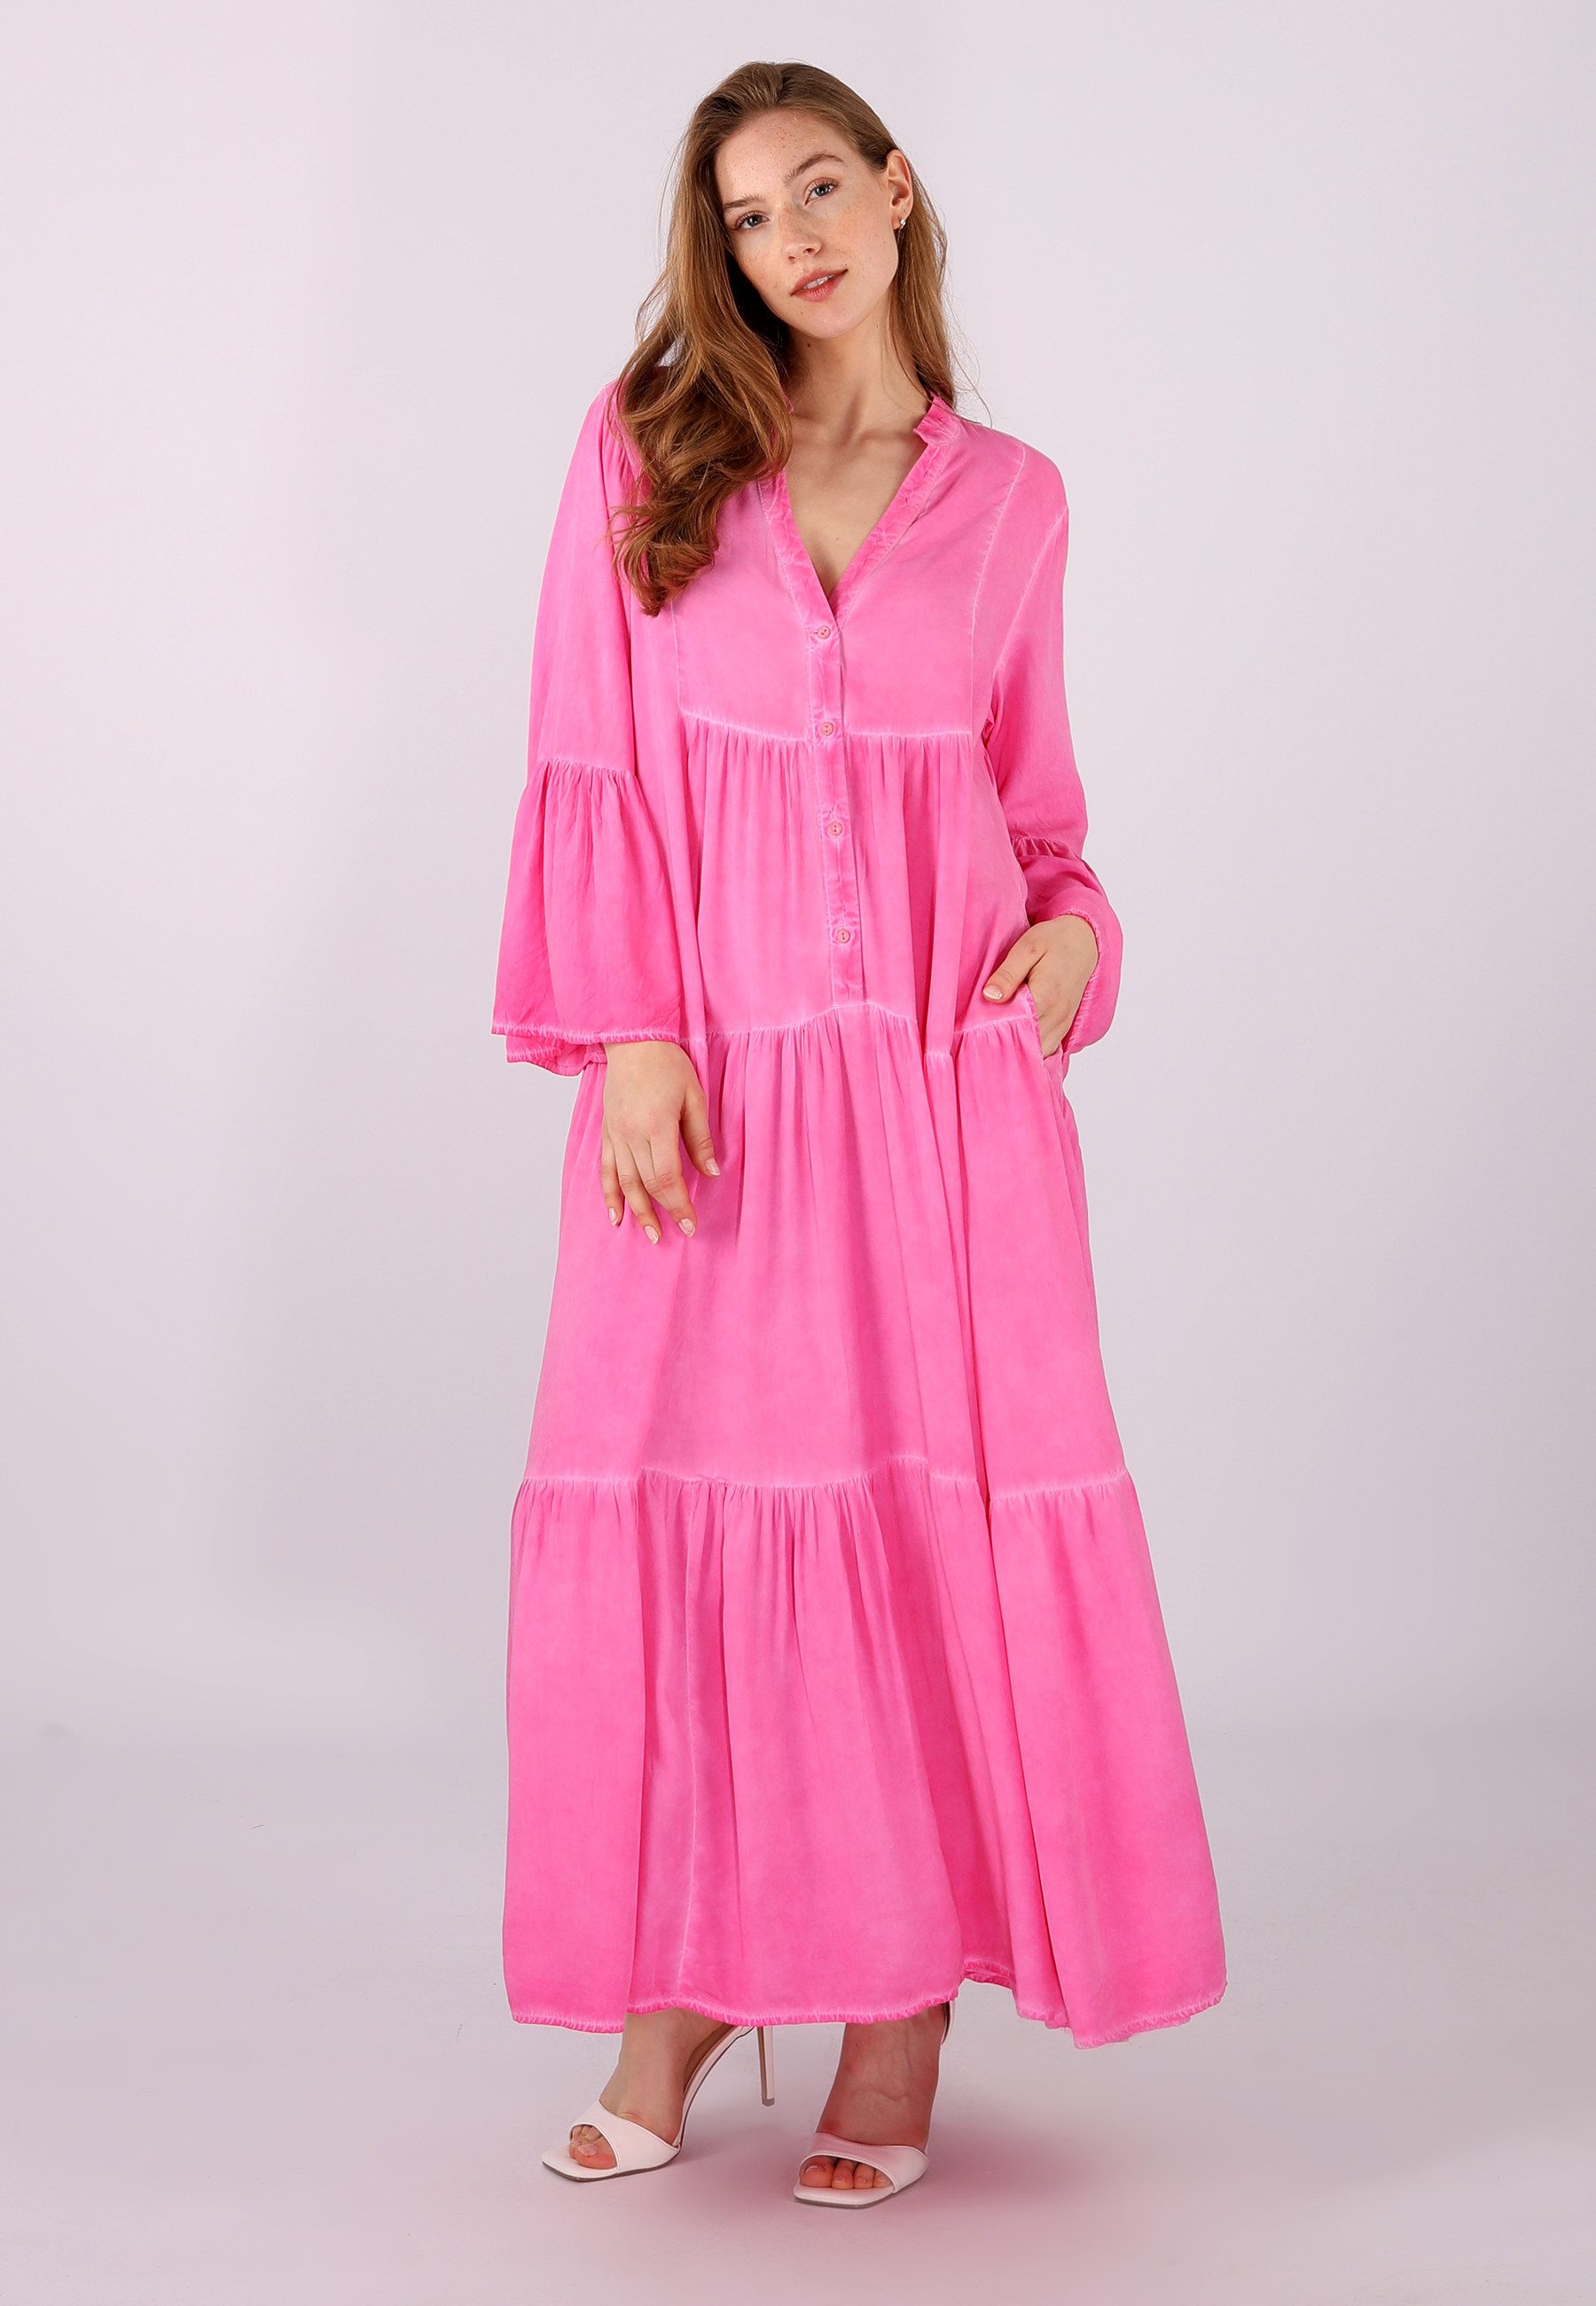 YC Fashion & Style Sommerkleid Vintage Bodenlanges Kleid Alloverdruck, Boho, Hippie, gemustert